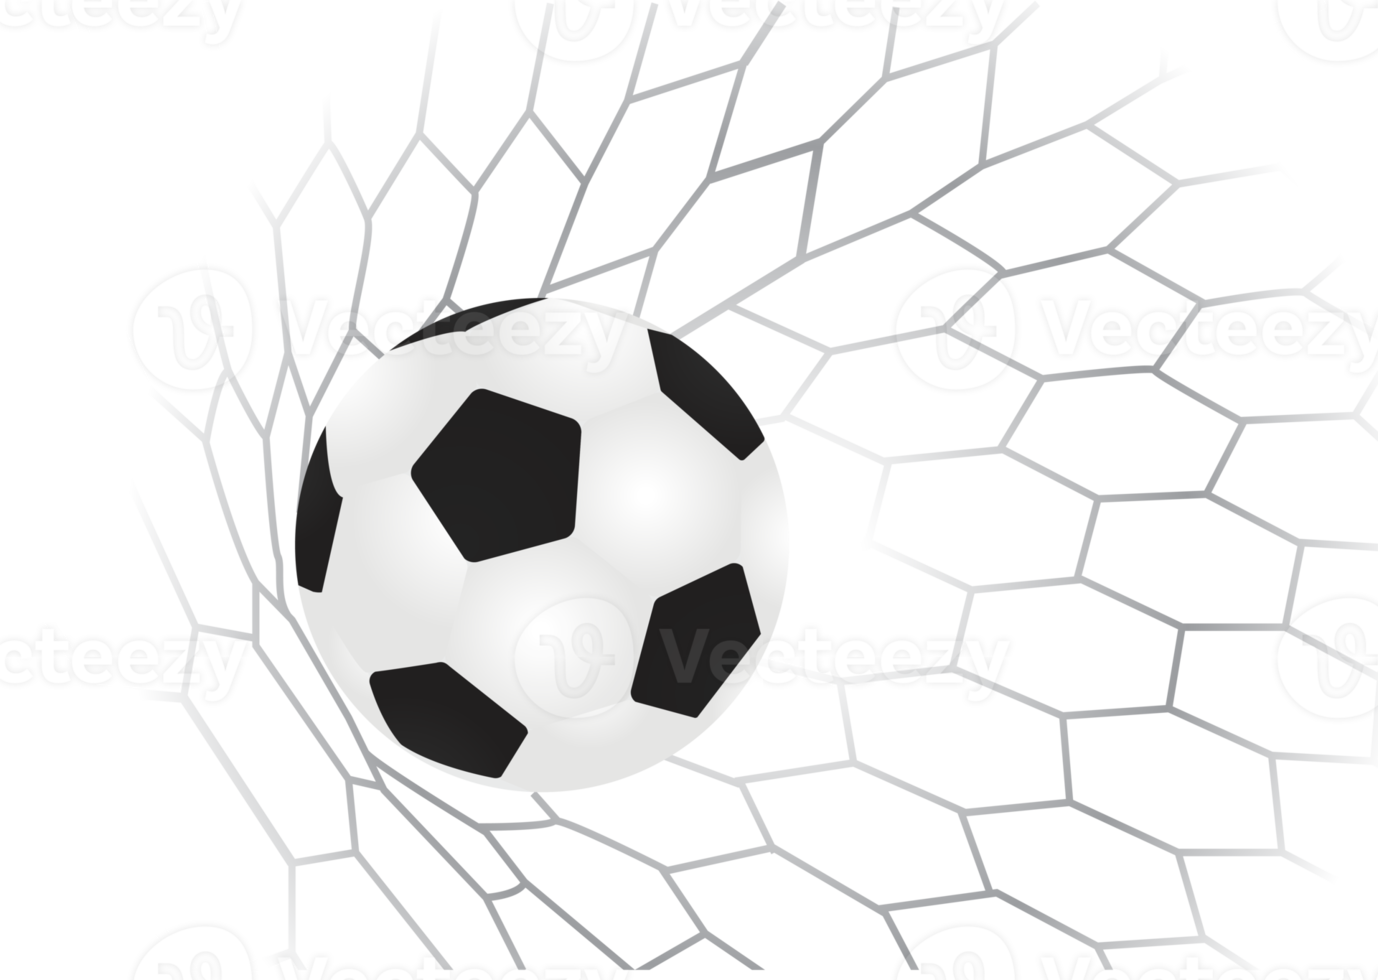 pallone da calcio in porta con rete png